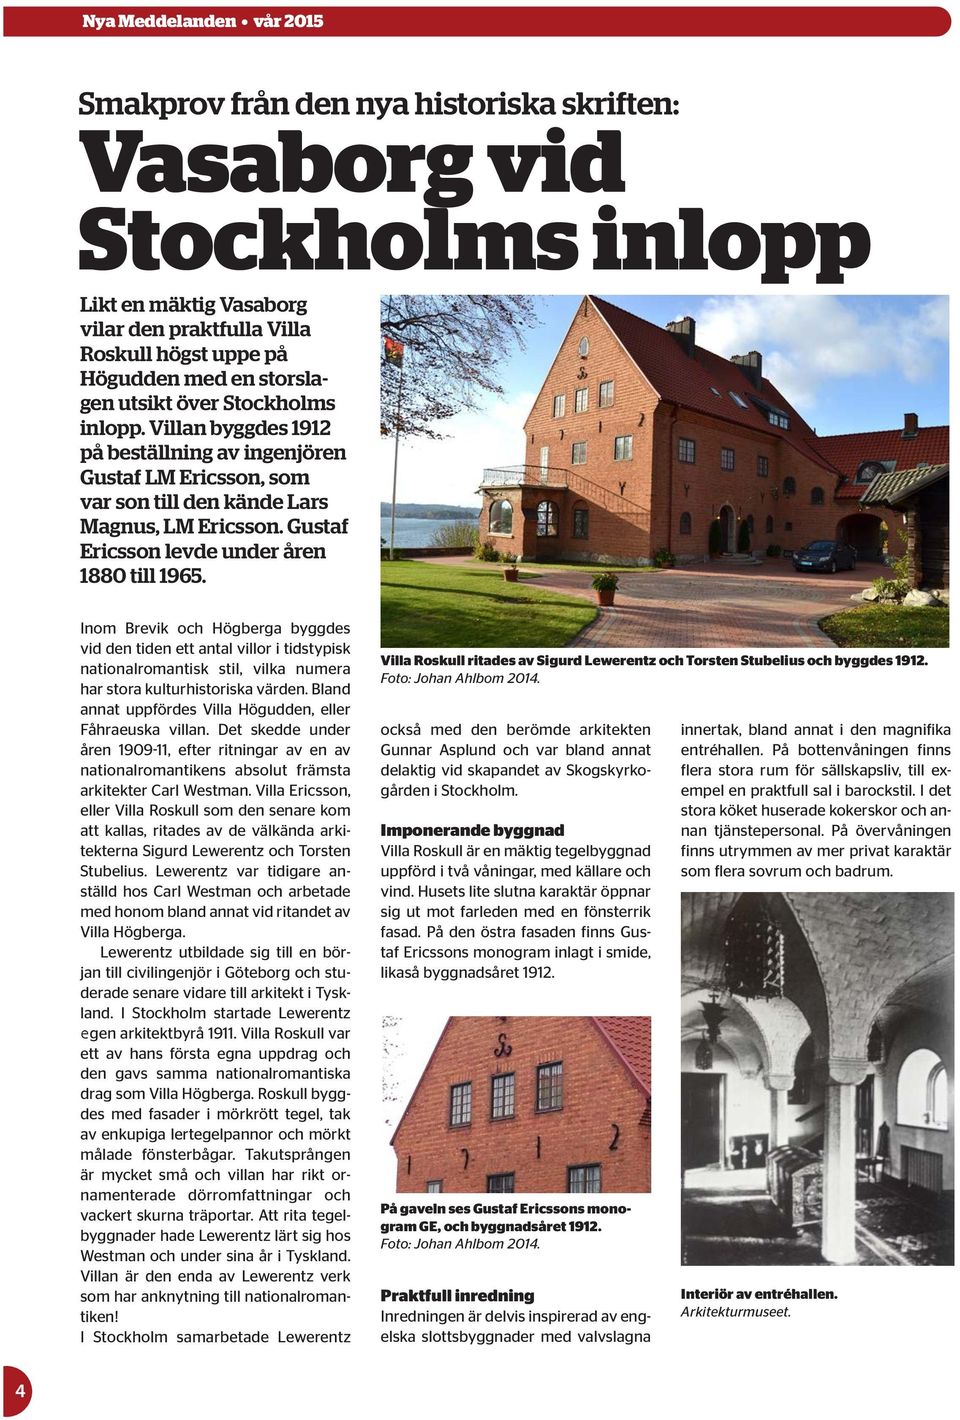 Inom Brevik och Högberga byggdes vid den tiden ett antal villor i tidstypisk nationalromantisk stil, vilka numera har stora kulturhistoriska värden.